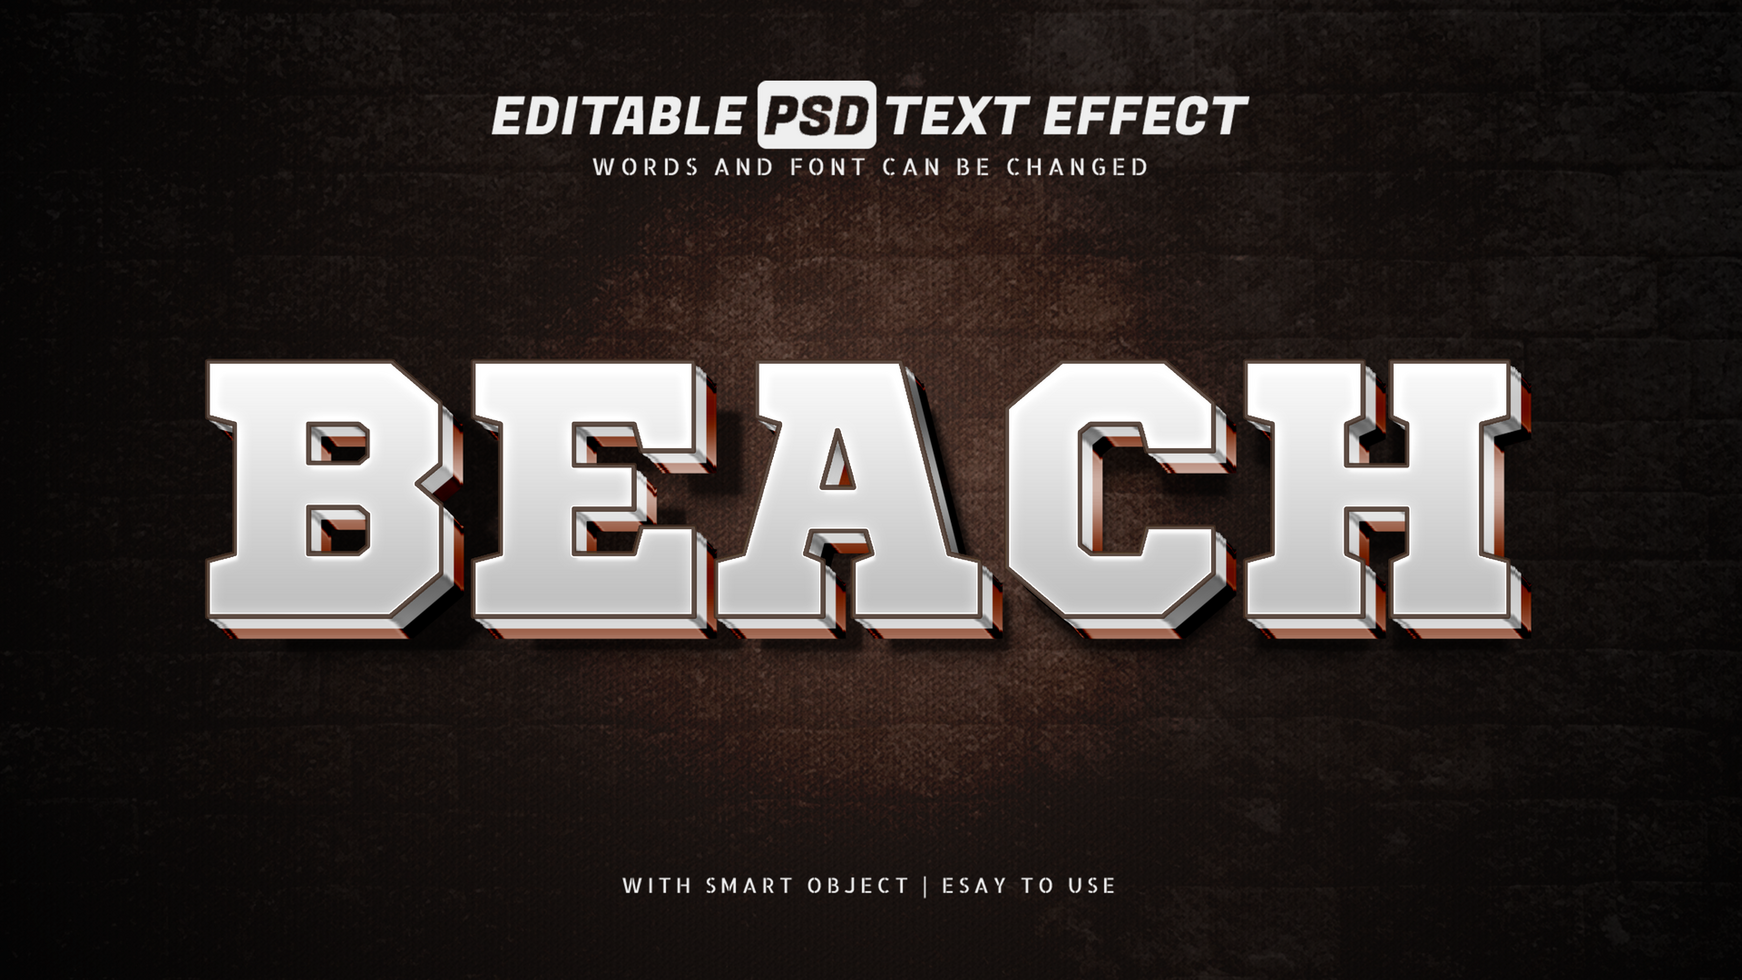 Beach 3d text effect editable psd